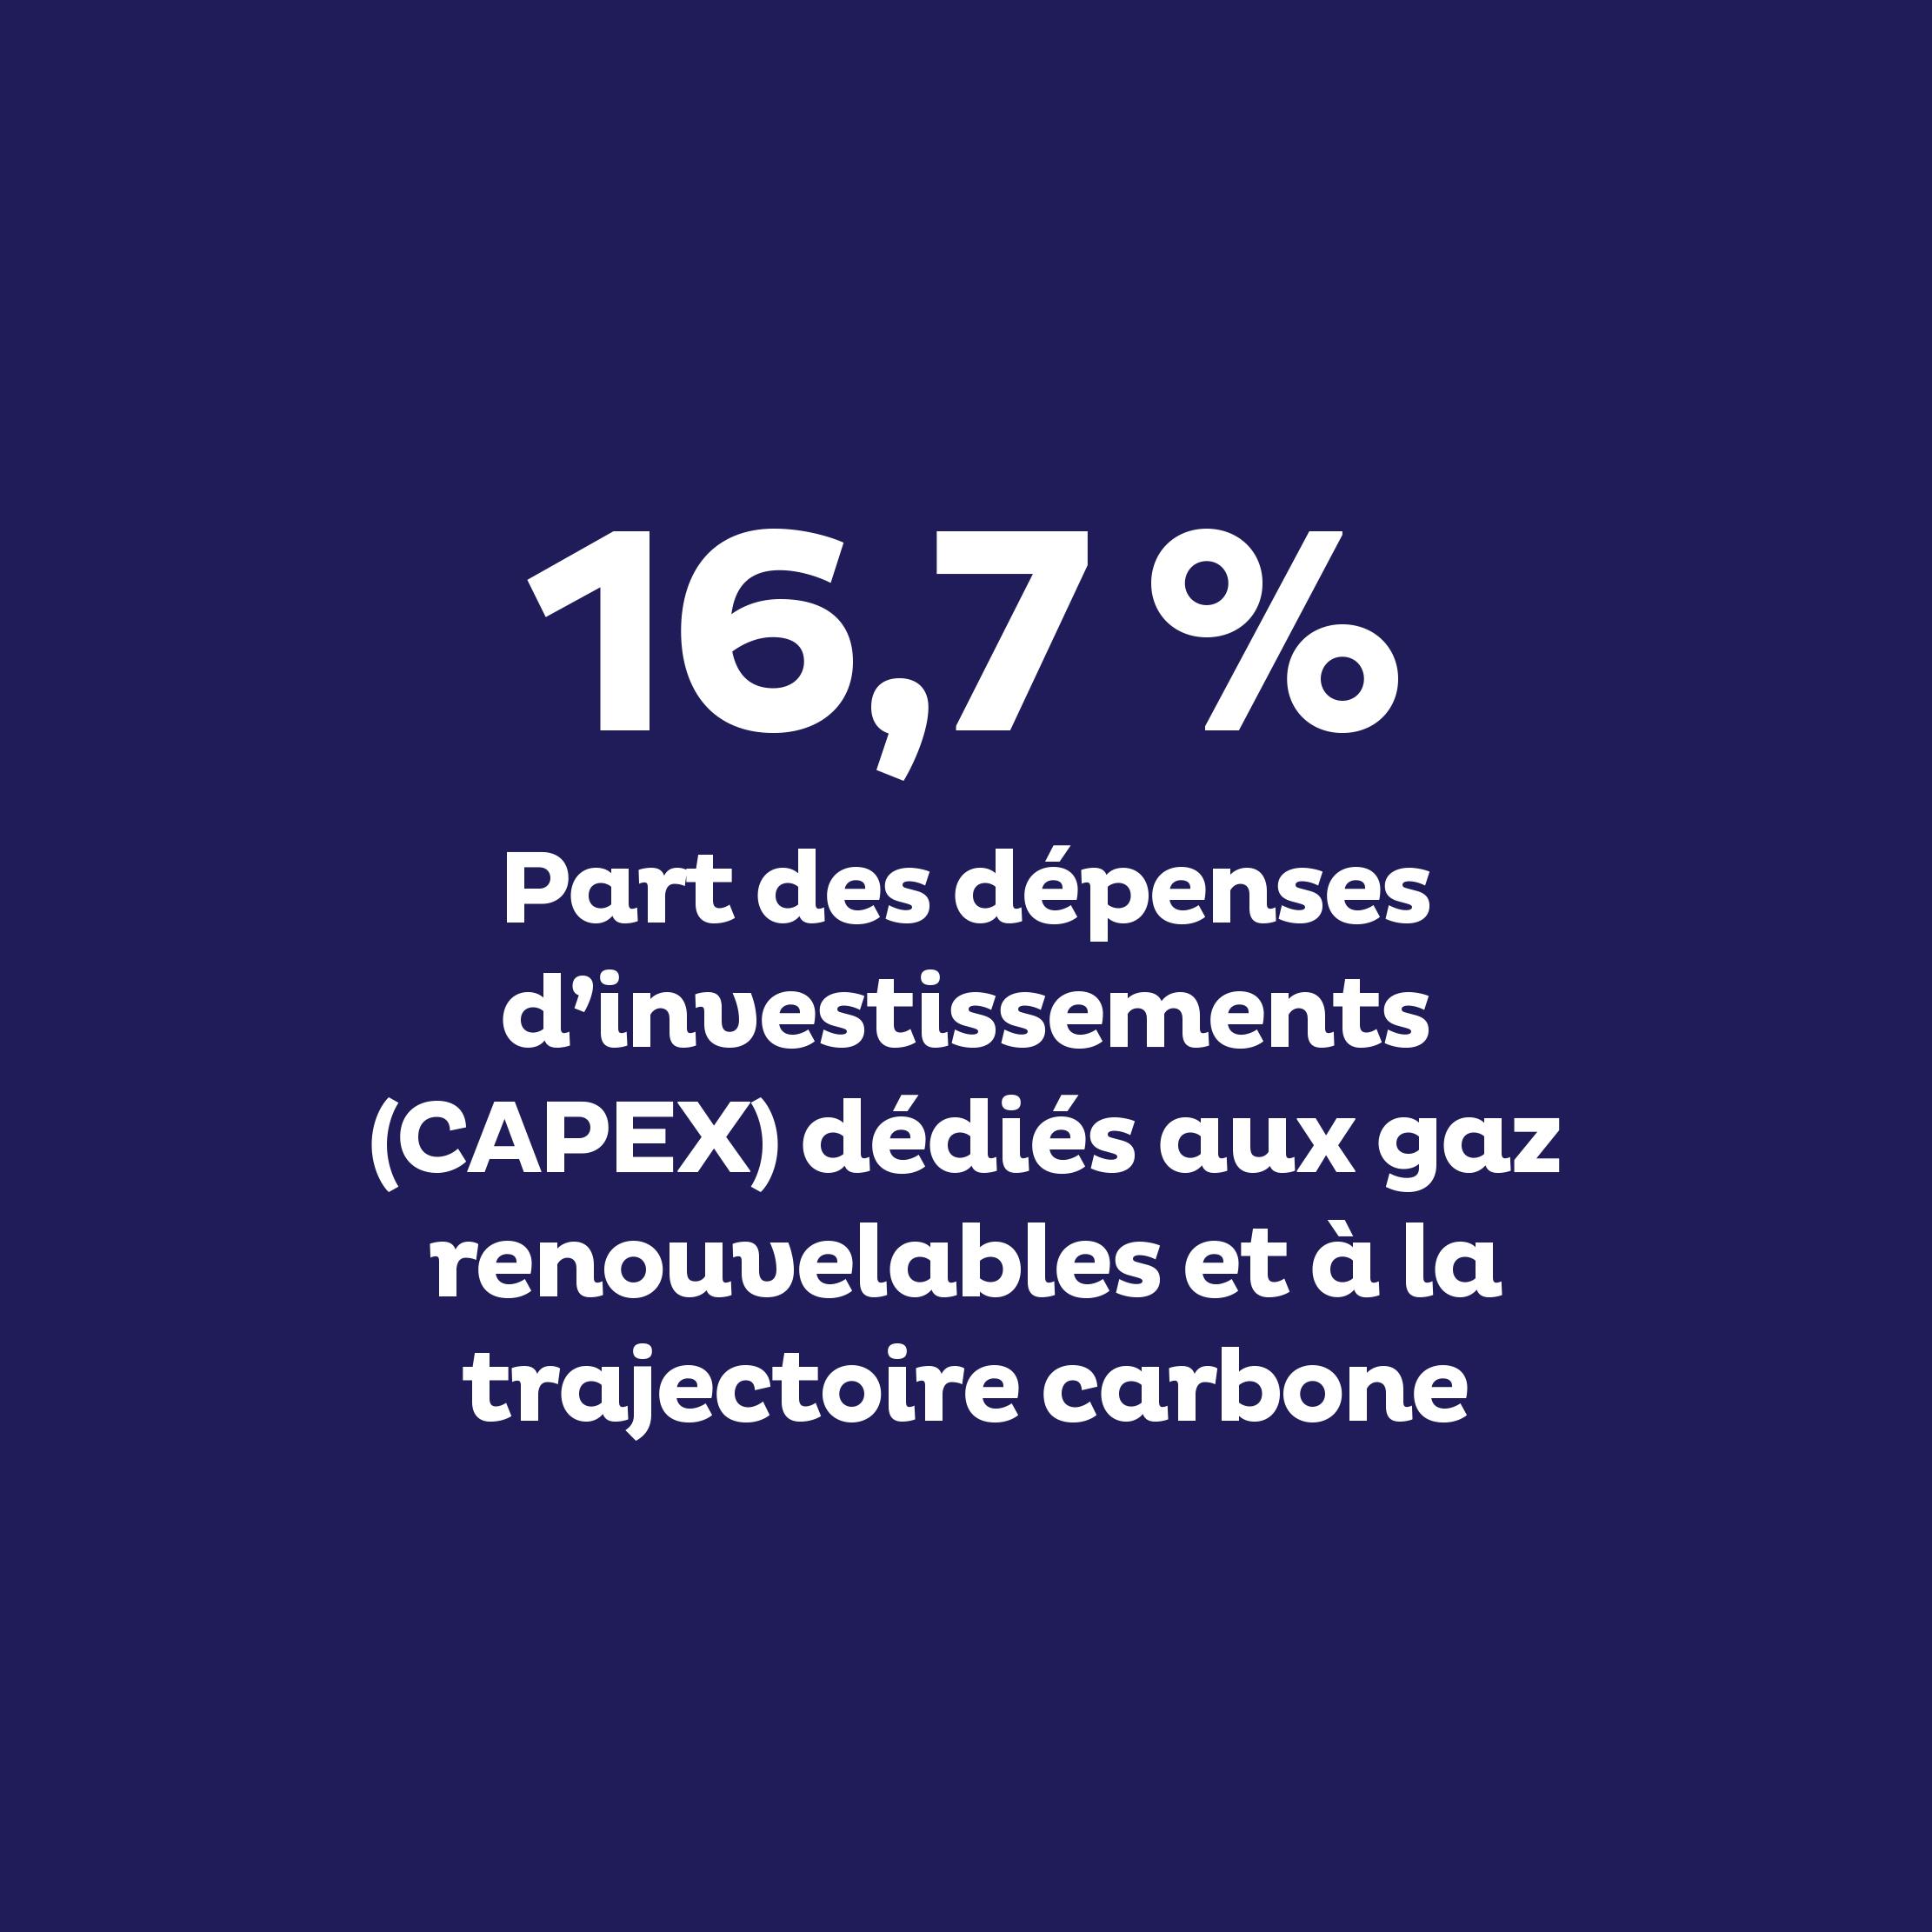 Part en % des dépenses d’investissements (CAPEX) dédiés aux gaz renouvelables et à la trajectoire carbone : 16,7 %